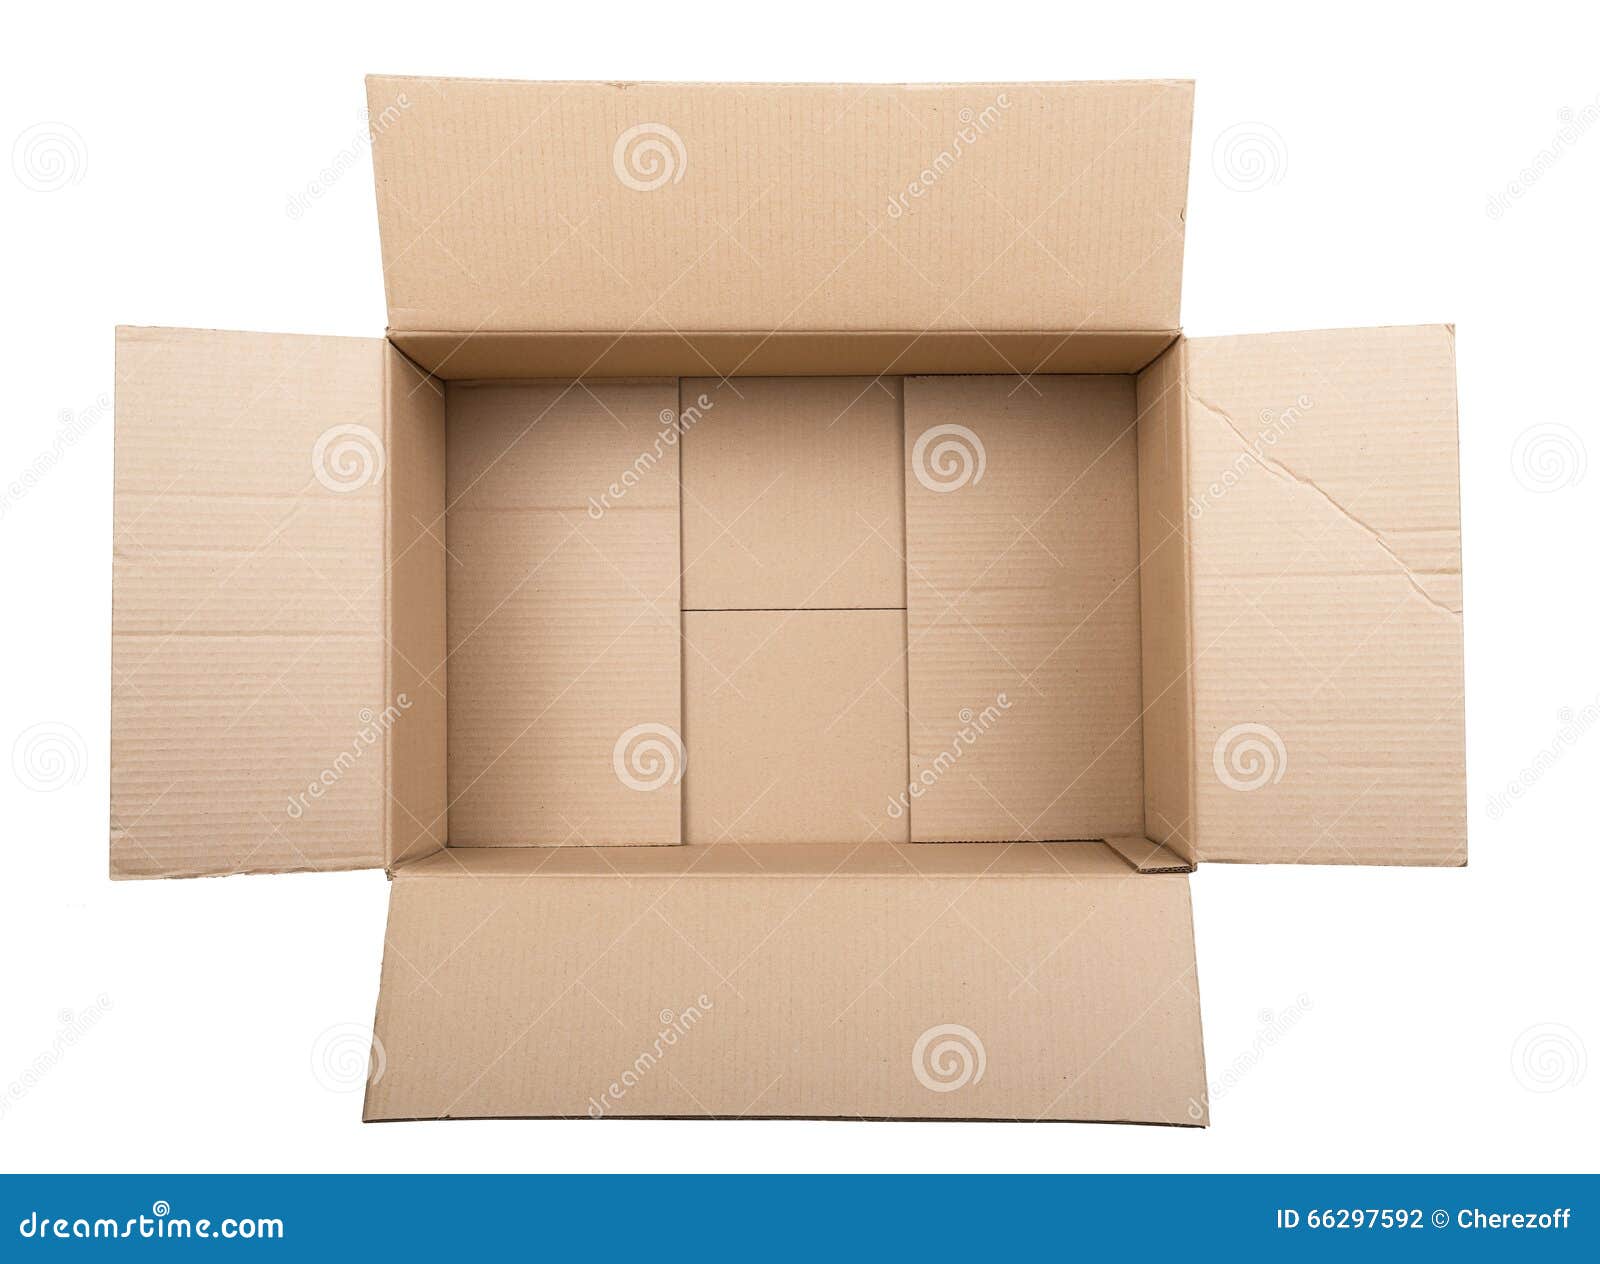 Коробка вид сверху. Картонная коробка сверху. Картонные коробки вид сверху. Картонная коробочка вид сверху.